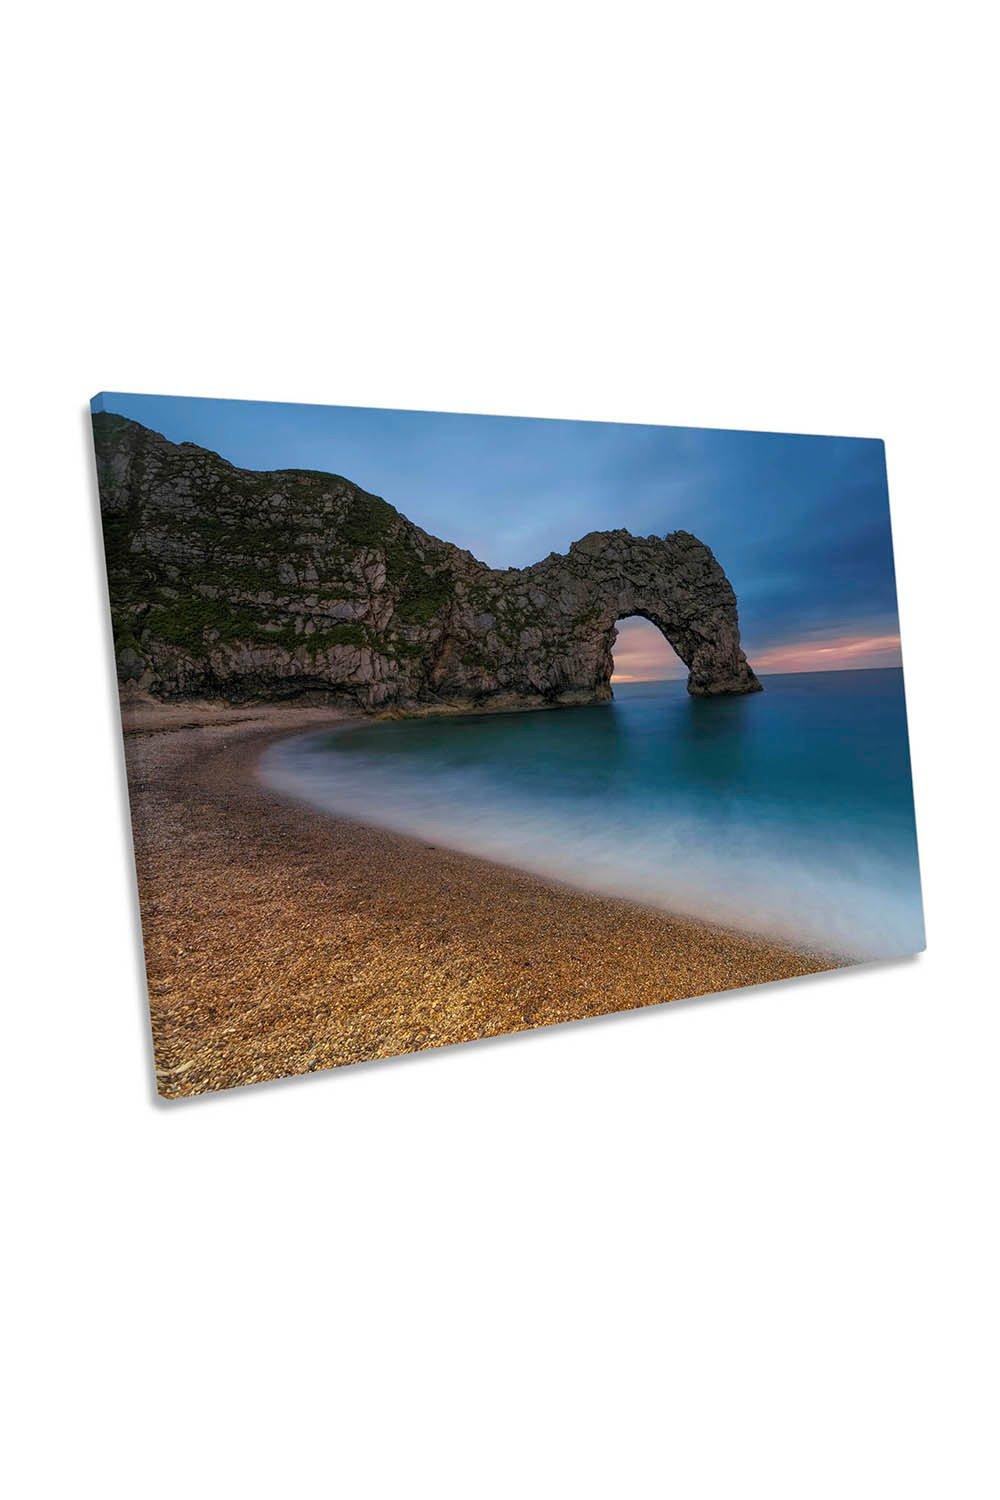 Dorset Beach Arch Cliff Beach Canvas Wall Art Picture Print